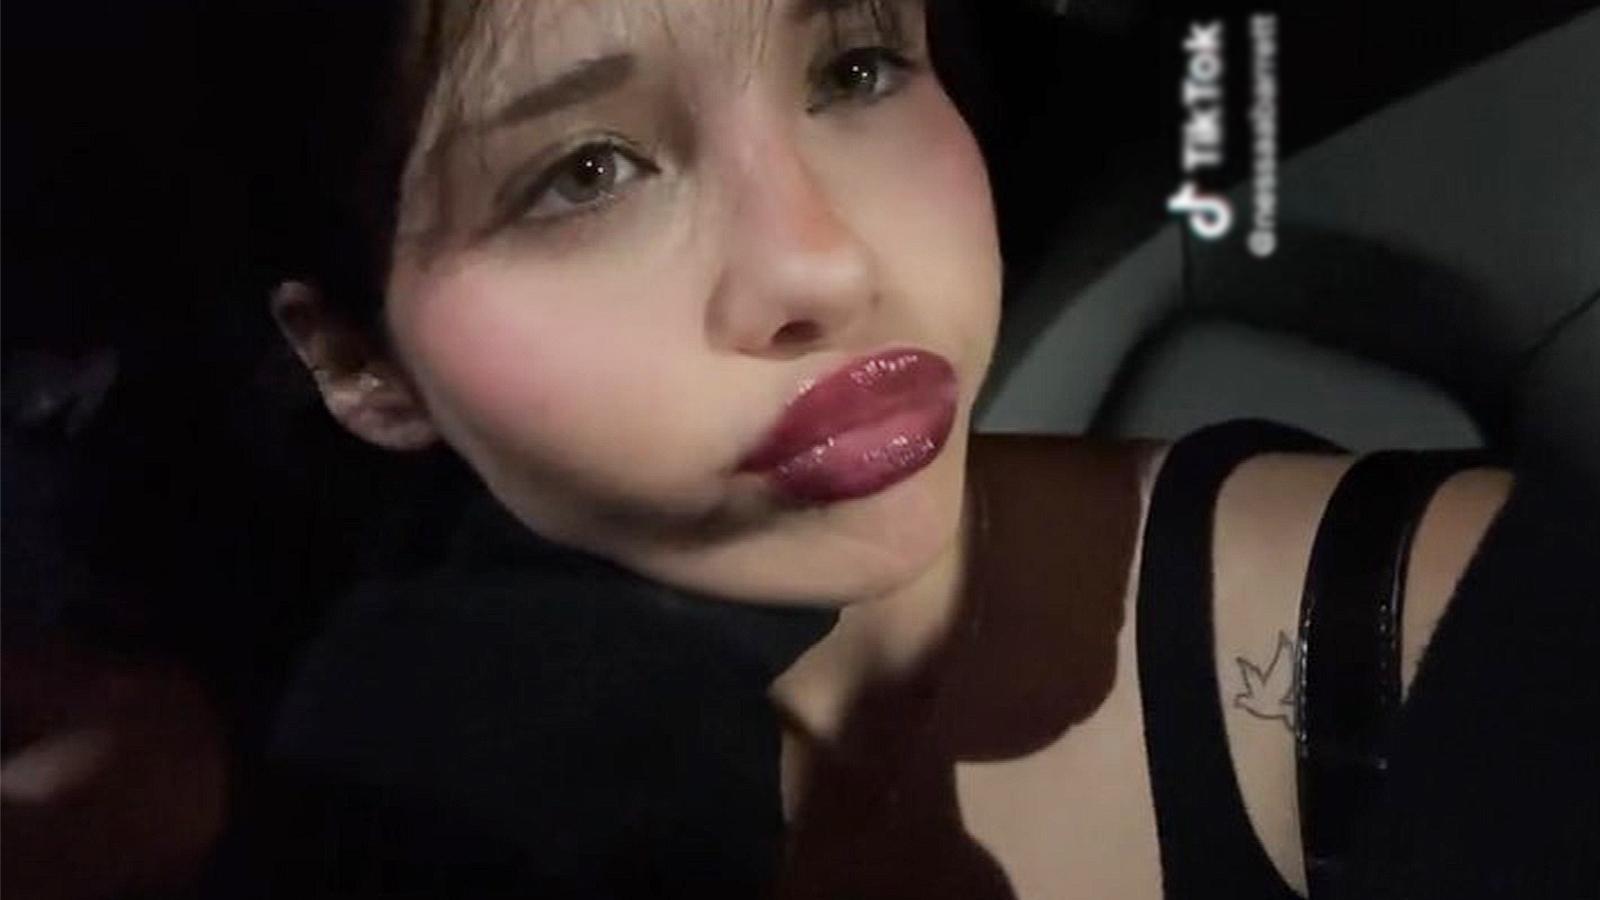 Fans divided over Nessa Barrett's new lip look